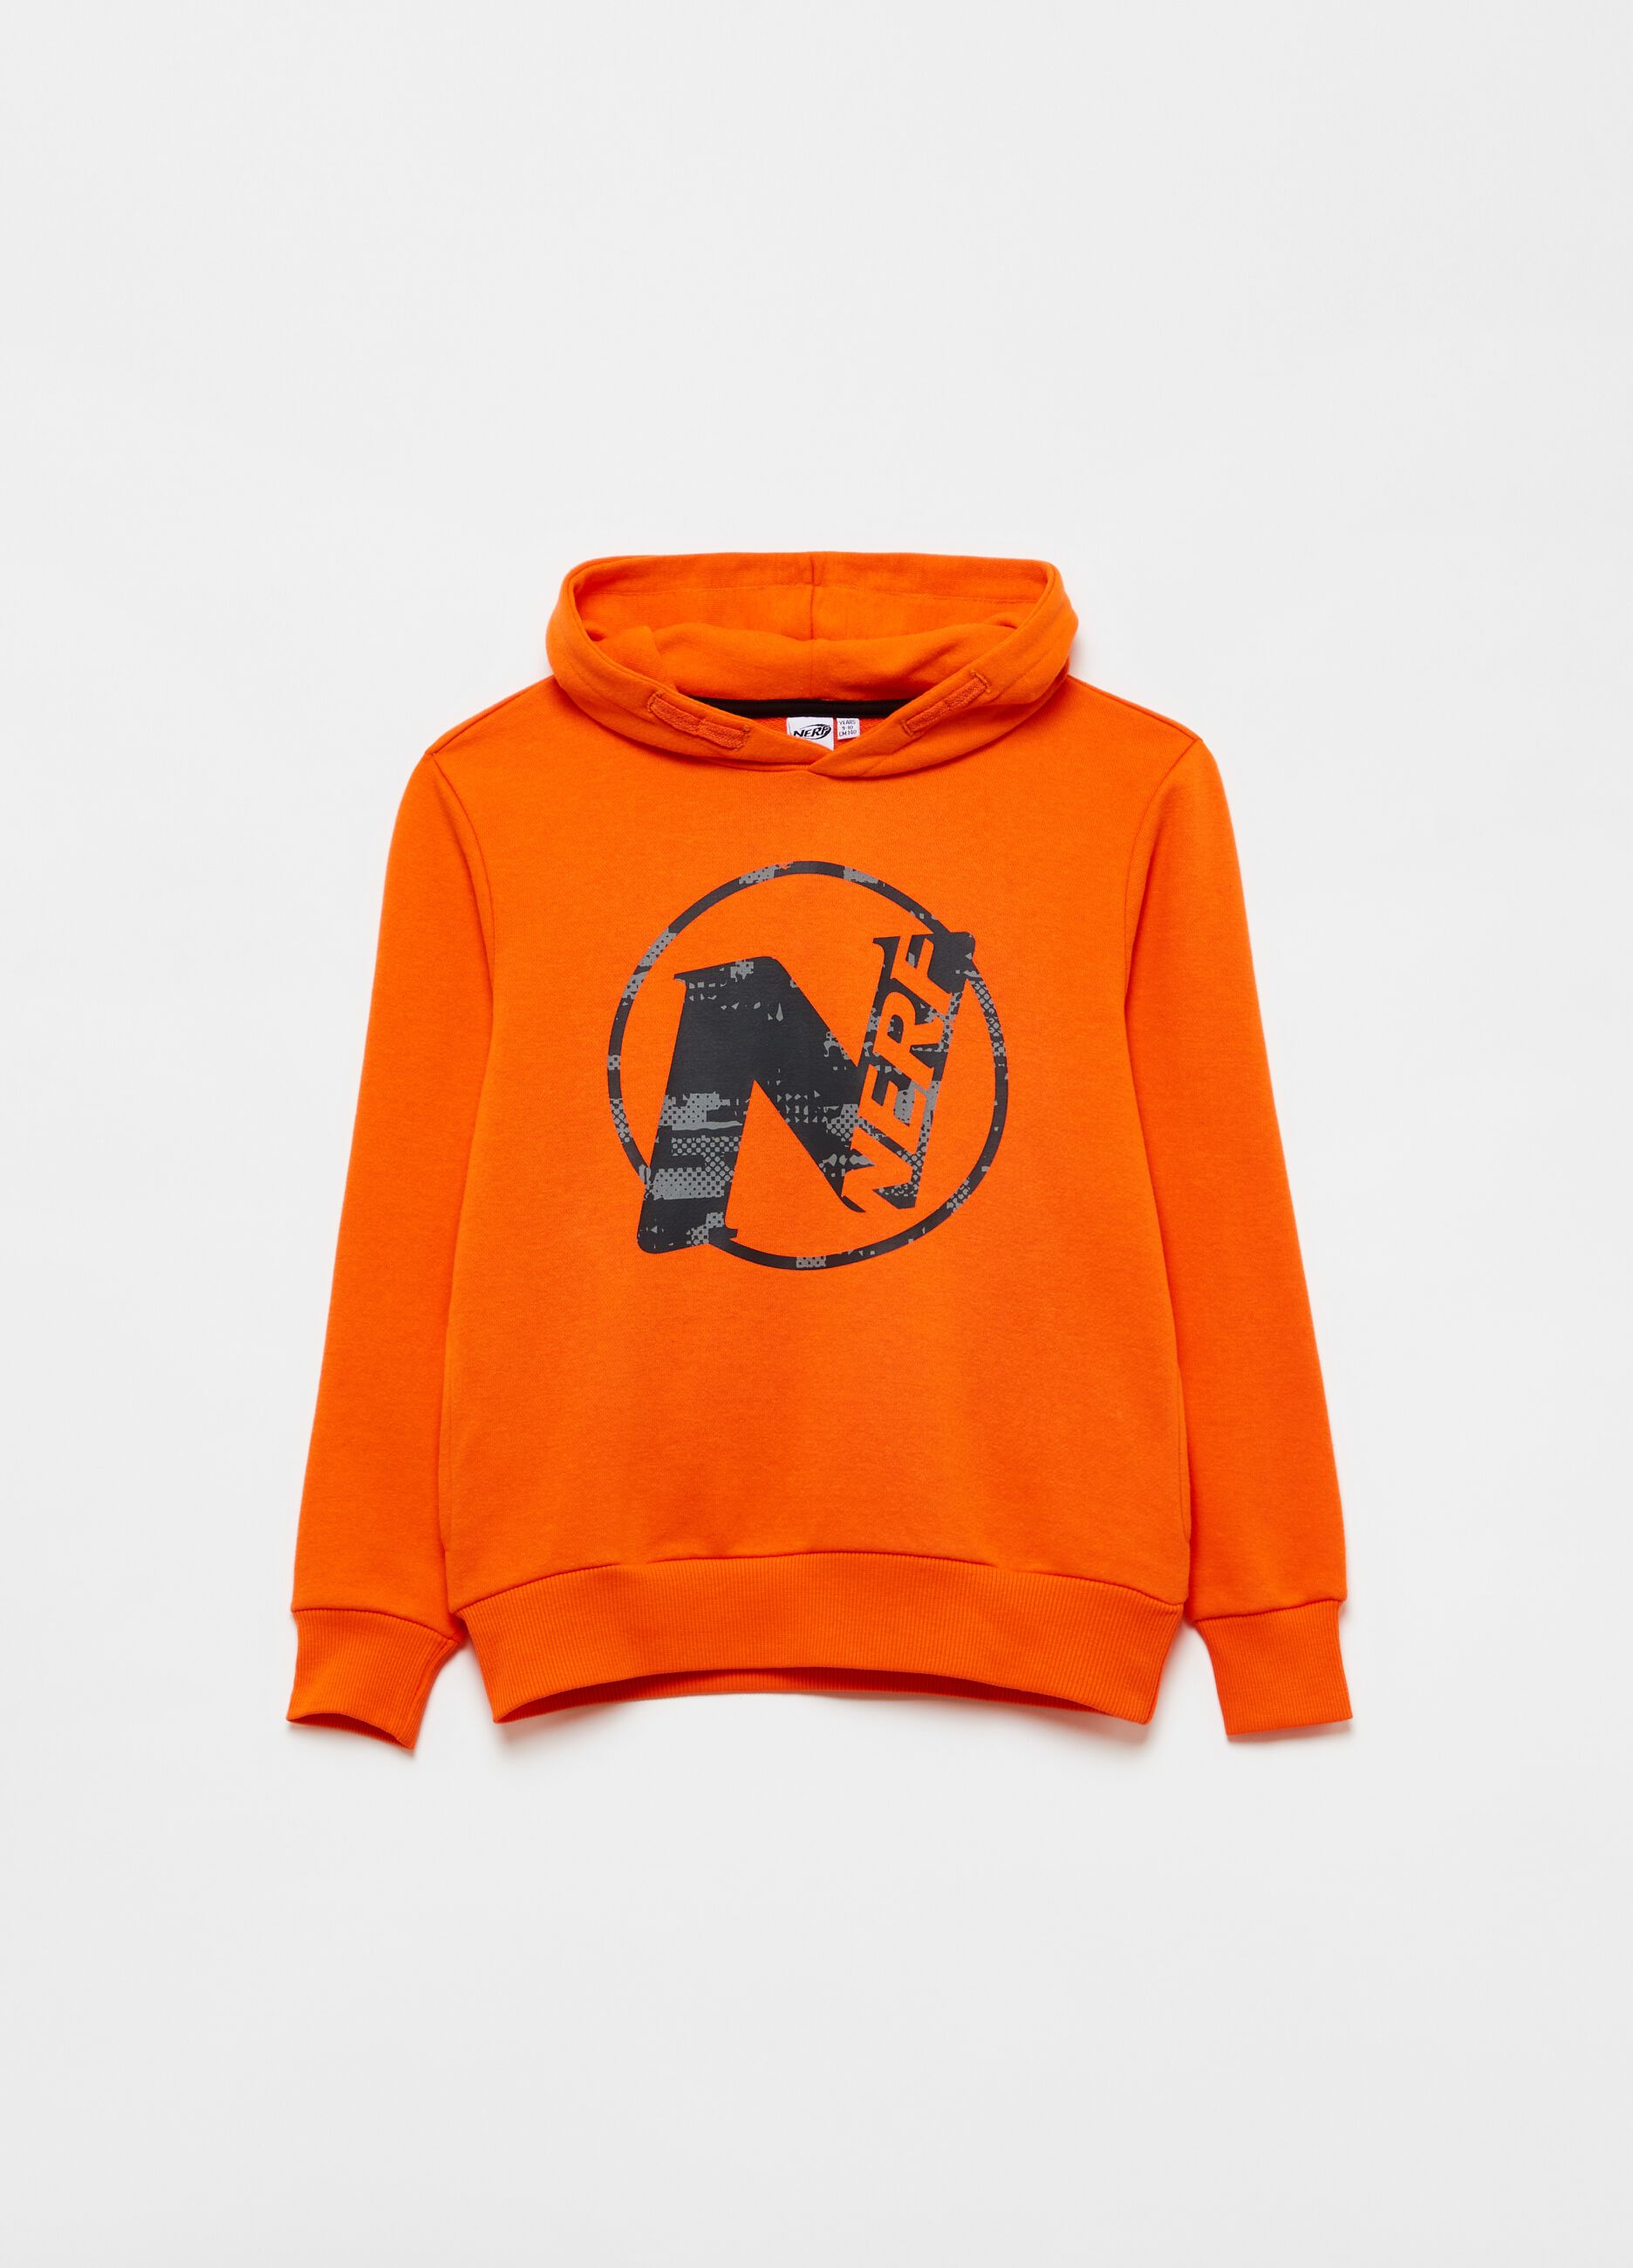 Sweatshirt with hood and NERF print